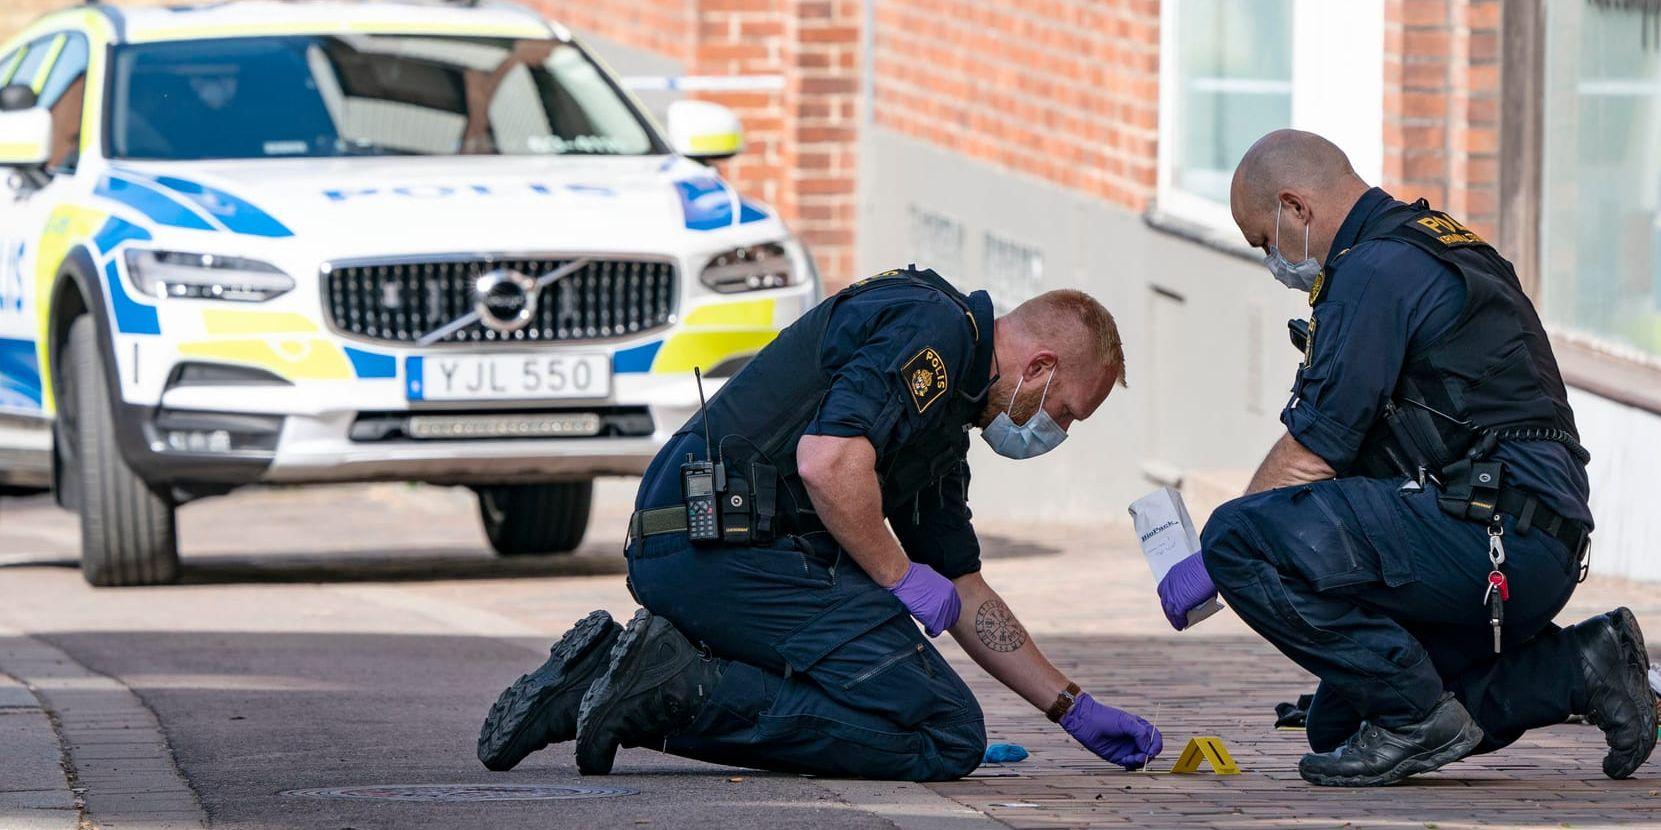 Polisens kriminaltekniker i arbete på den trottoar i centrala Helsingborg där en kvinna utsattes för ett knivdåd.